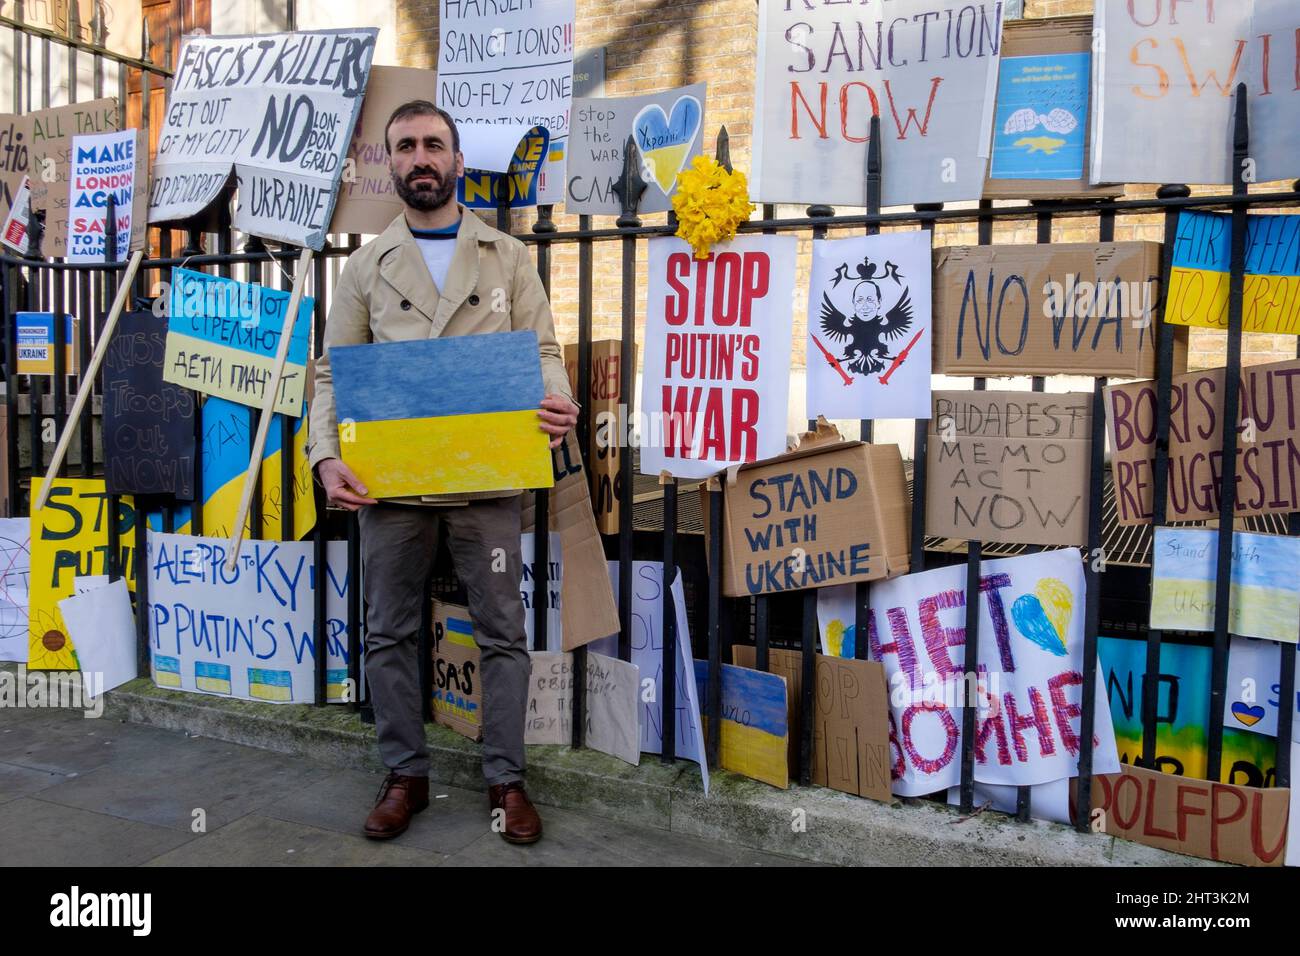 26.. Februar 2022: Ukrainische Staatsbürger und pro-ukrainische Anhänger versammeln sich in Whitehall, um gegen die russische Invasion in der Ukraine zu protestieren. London, Großbritannien. Im Bild: Nach der Kundgebung sind auf dem Geländer Plakate zu sehen. Stockfoto